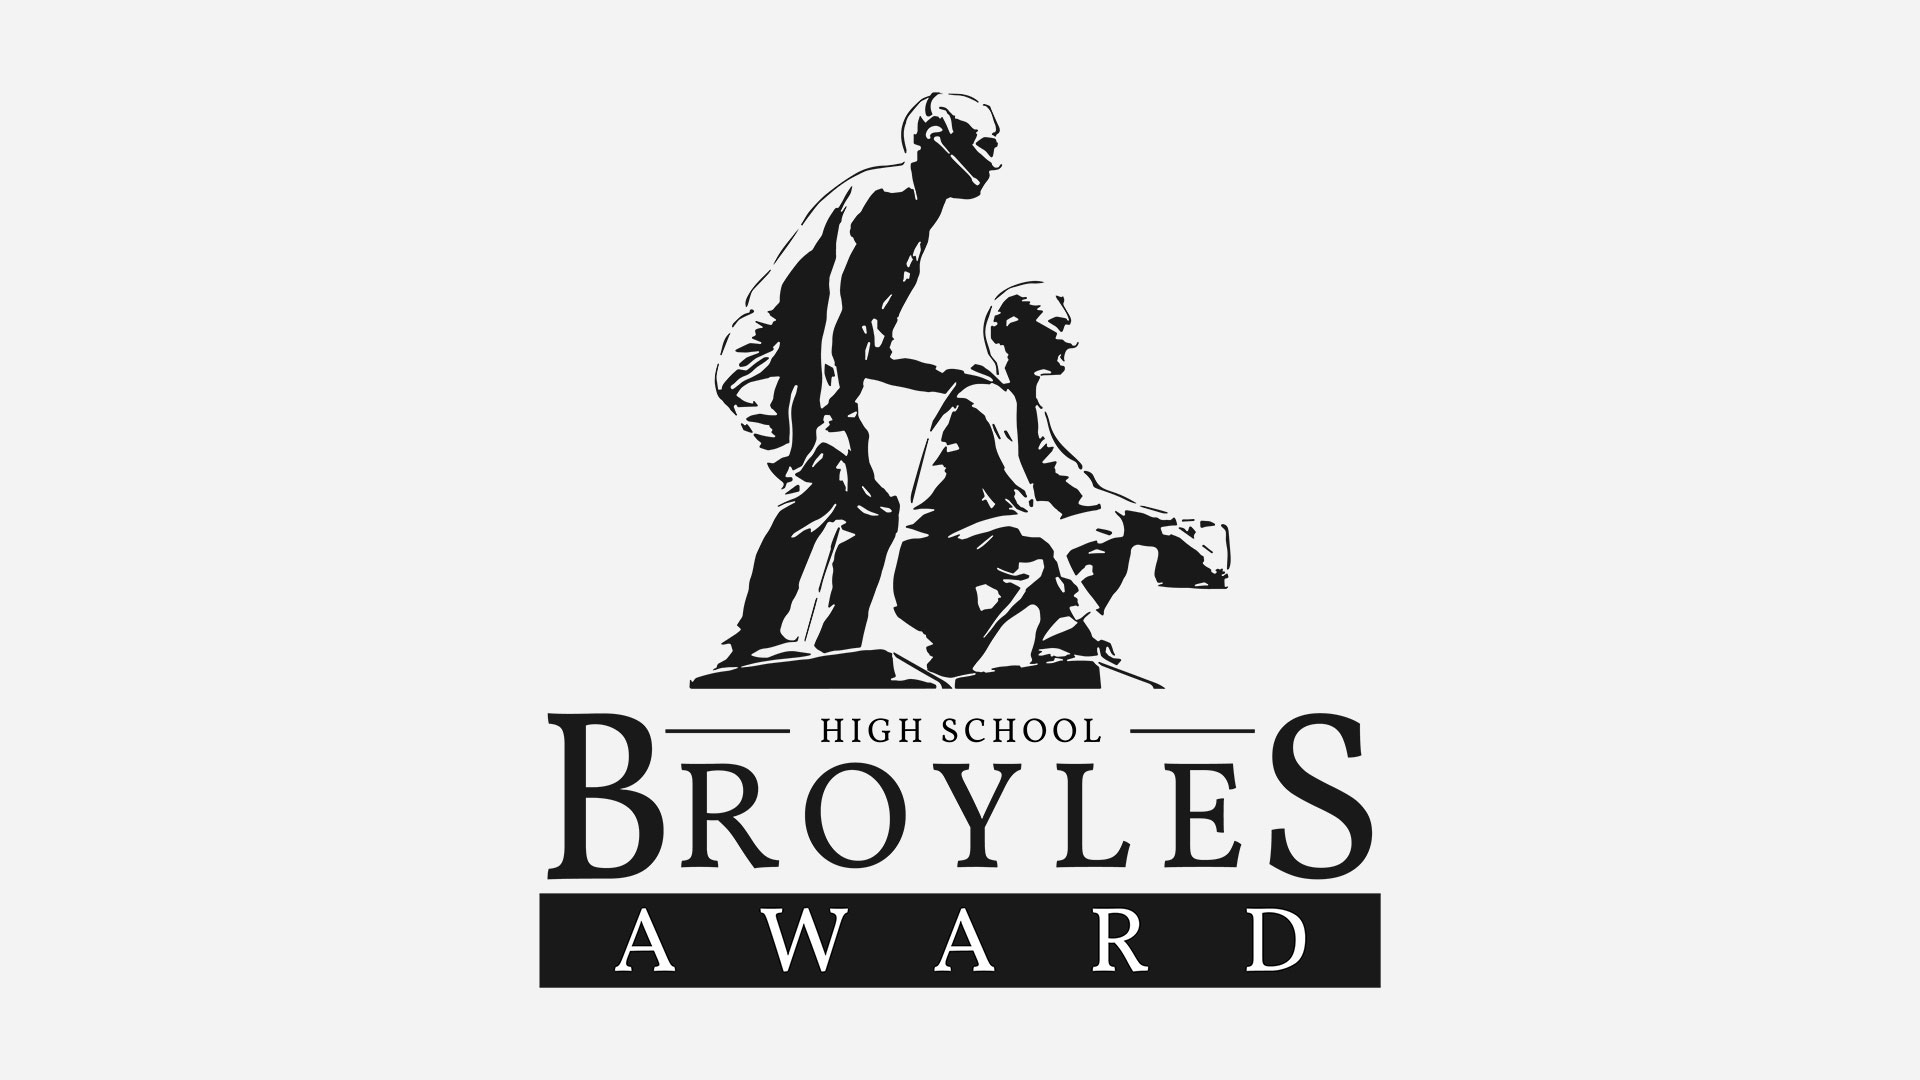 Broyles Award Announces Partnership with FieldTurf As 20212022 High